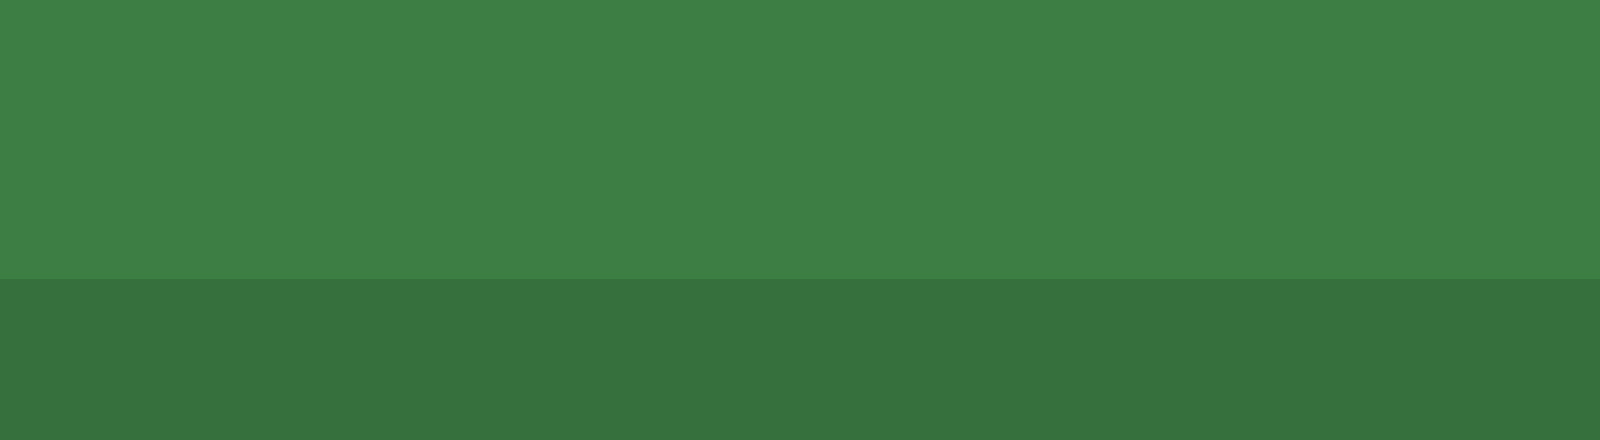 bg-banner-verde